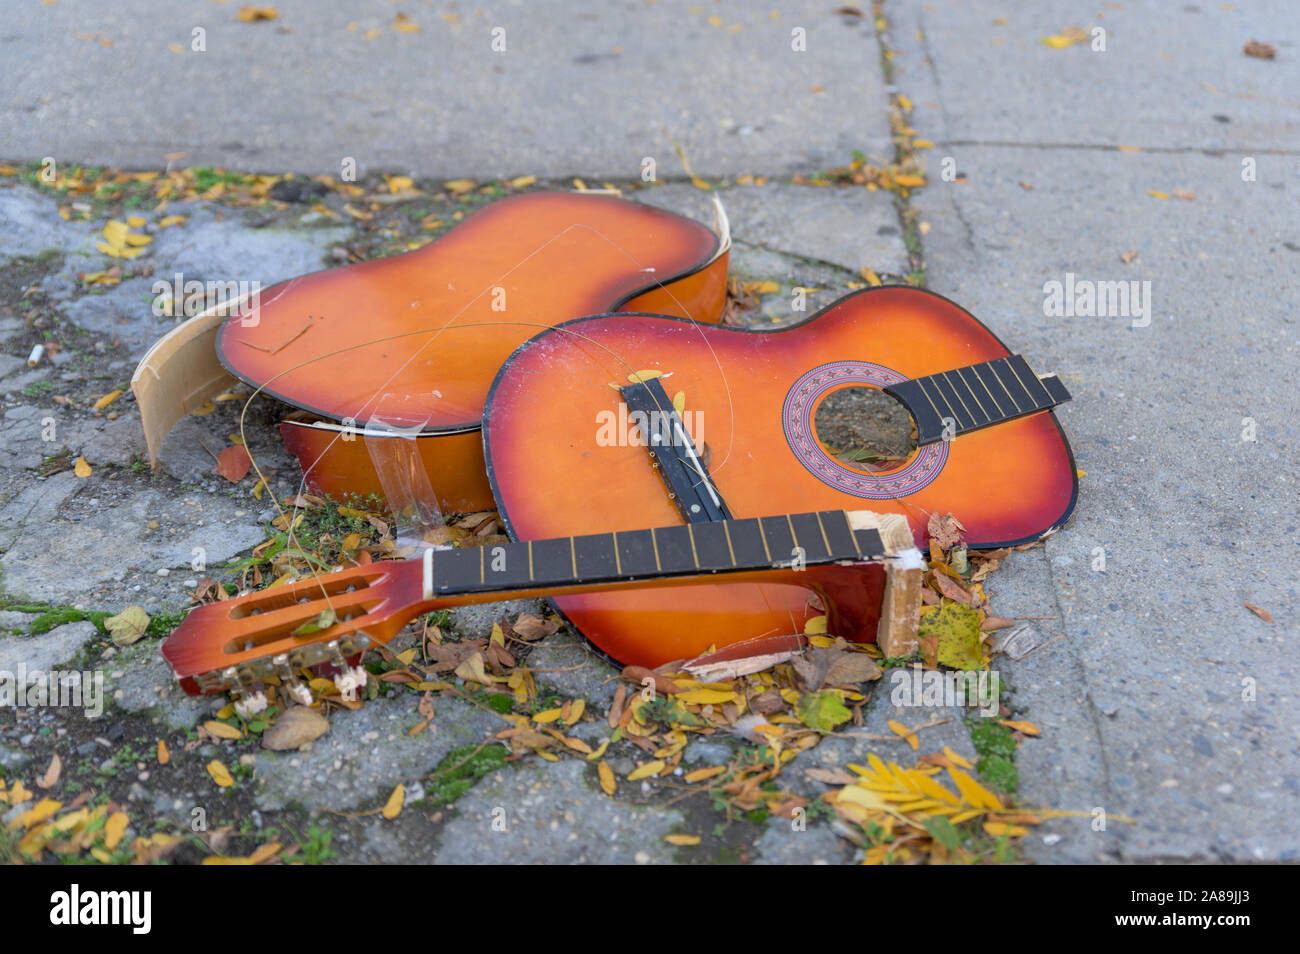 Eine kaputte alte Gitarre liegend auf dem Beton, auf einem New York City  street verworfen Stockfotografie - Alamy